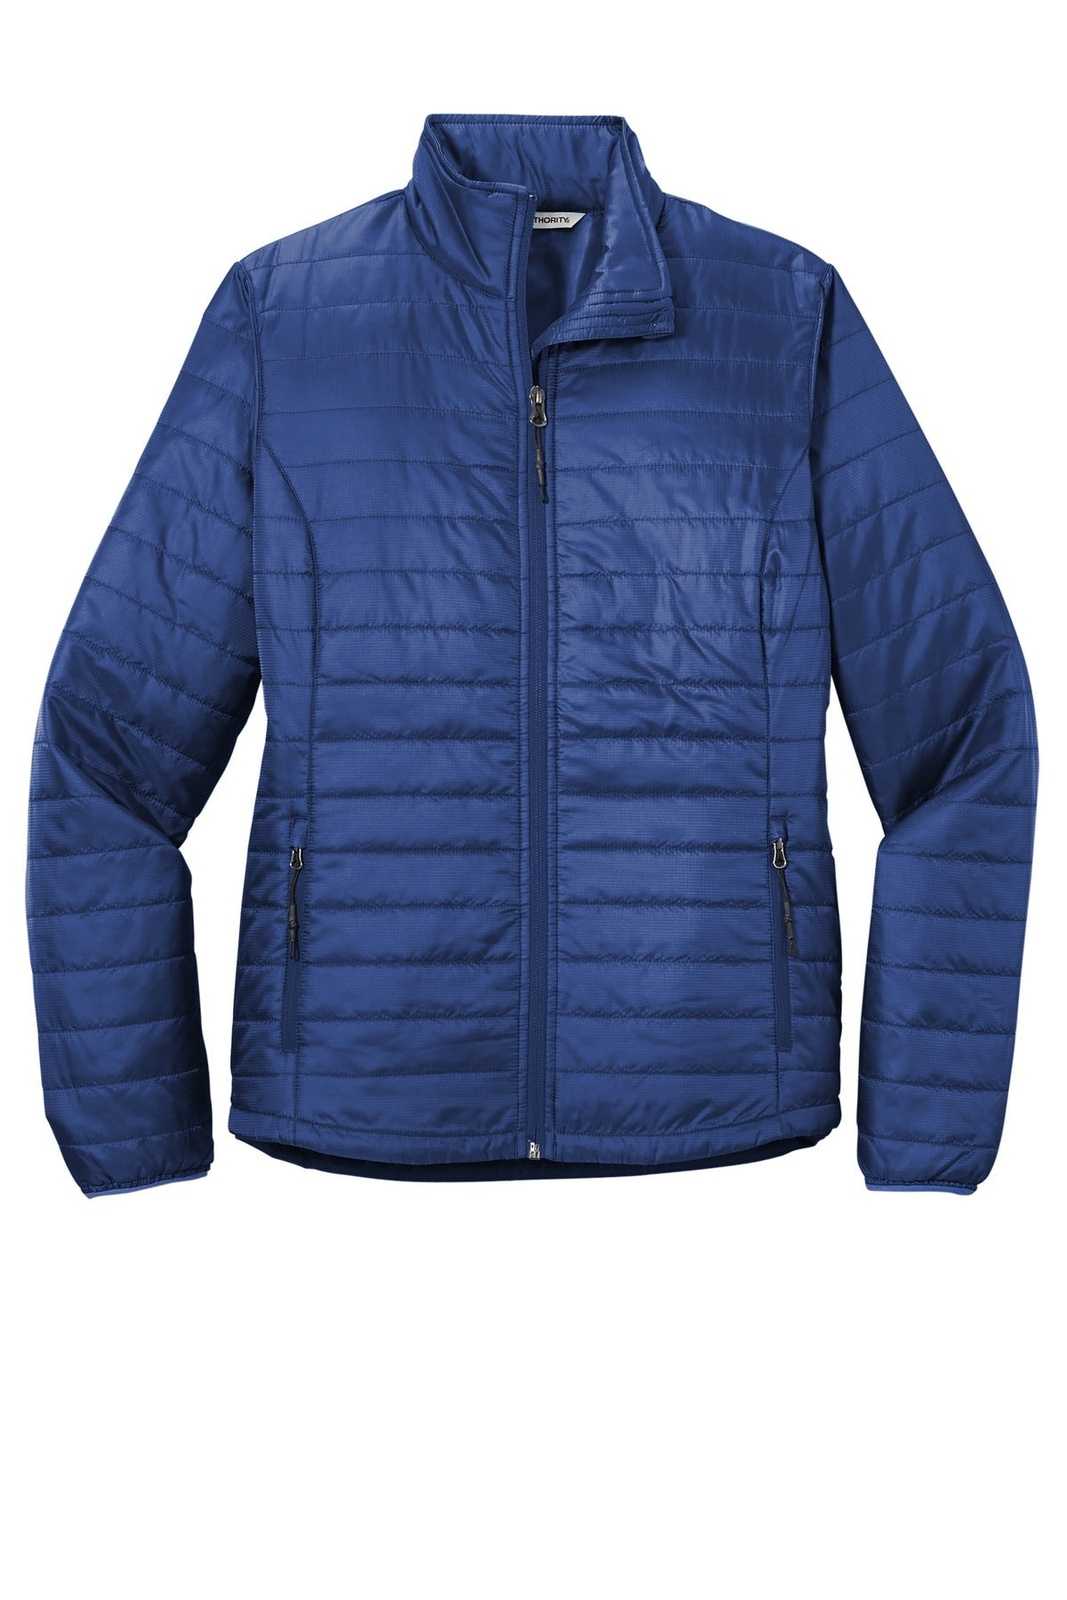 Port Authority L850 Ladies Packable Puffy Jacket - Cobalt Blue - HIT a Double - 5